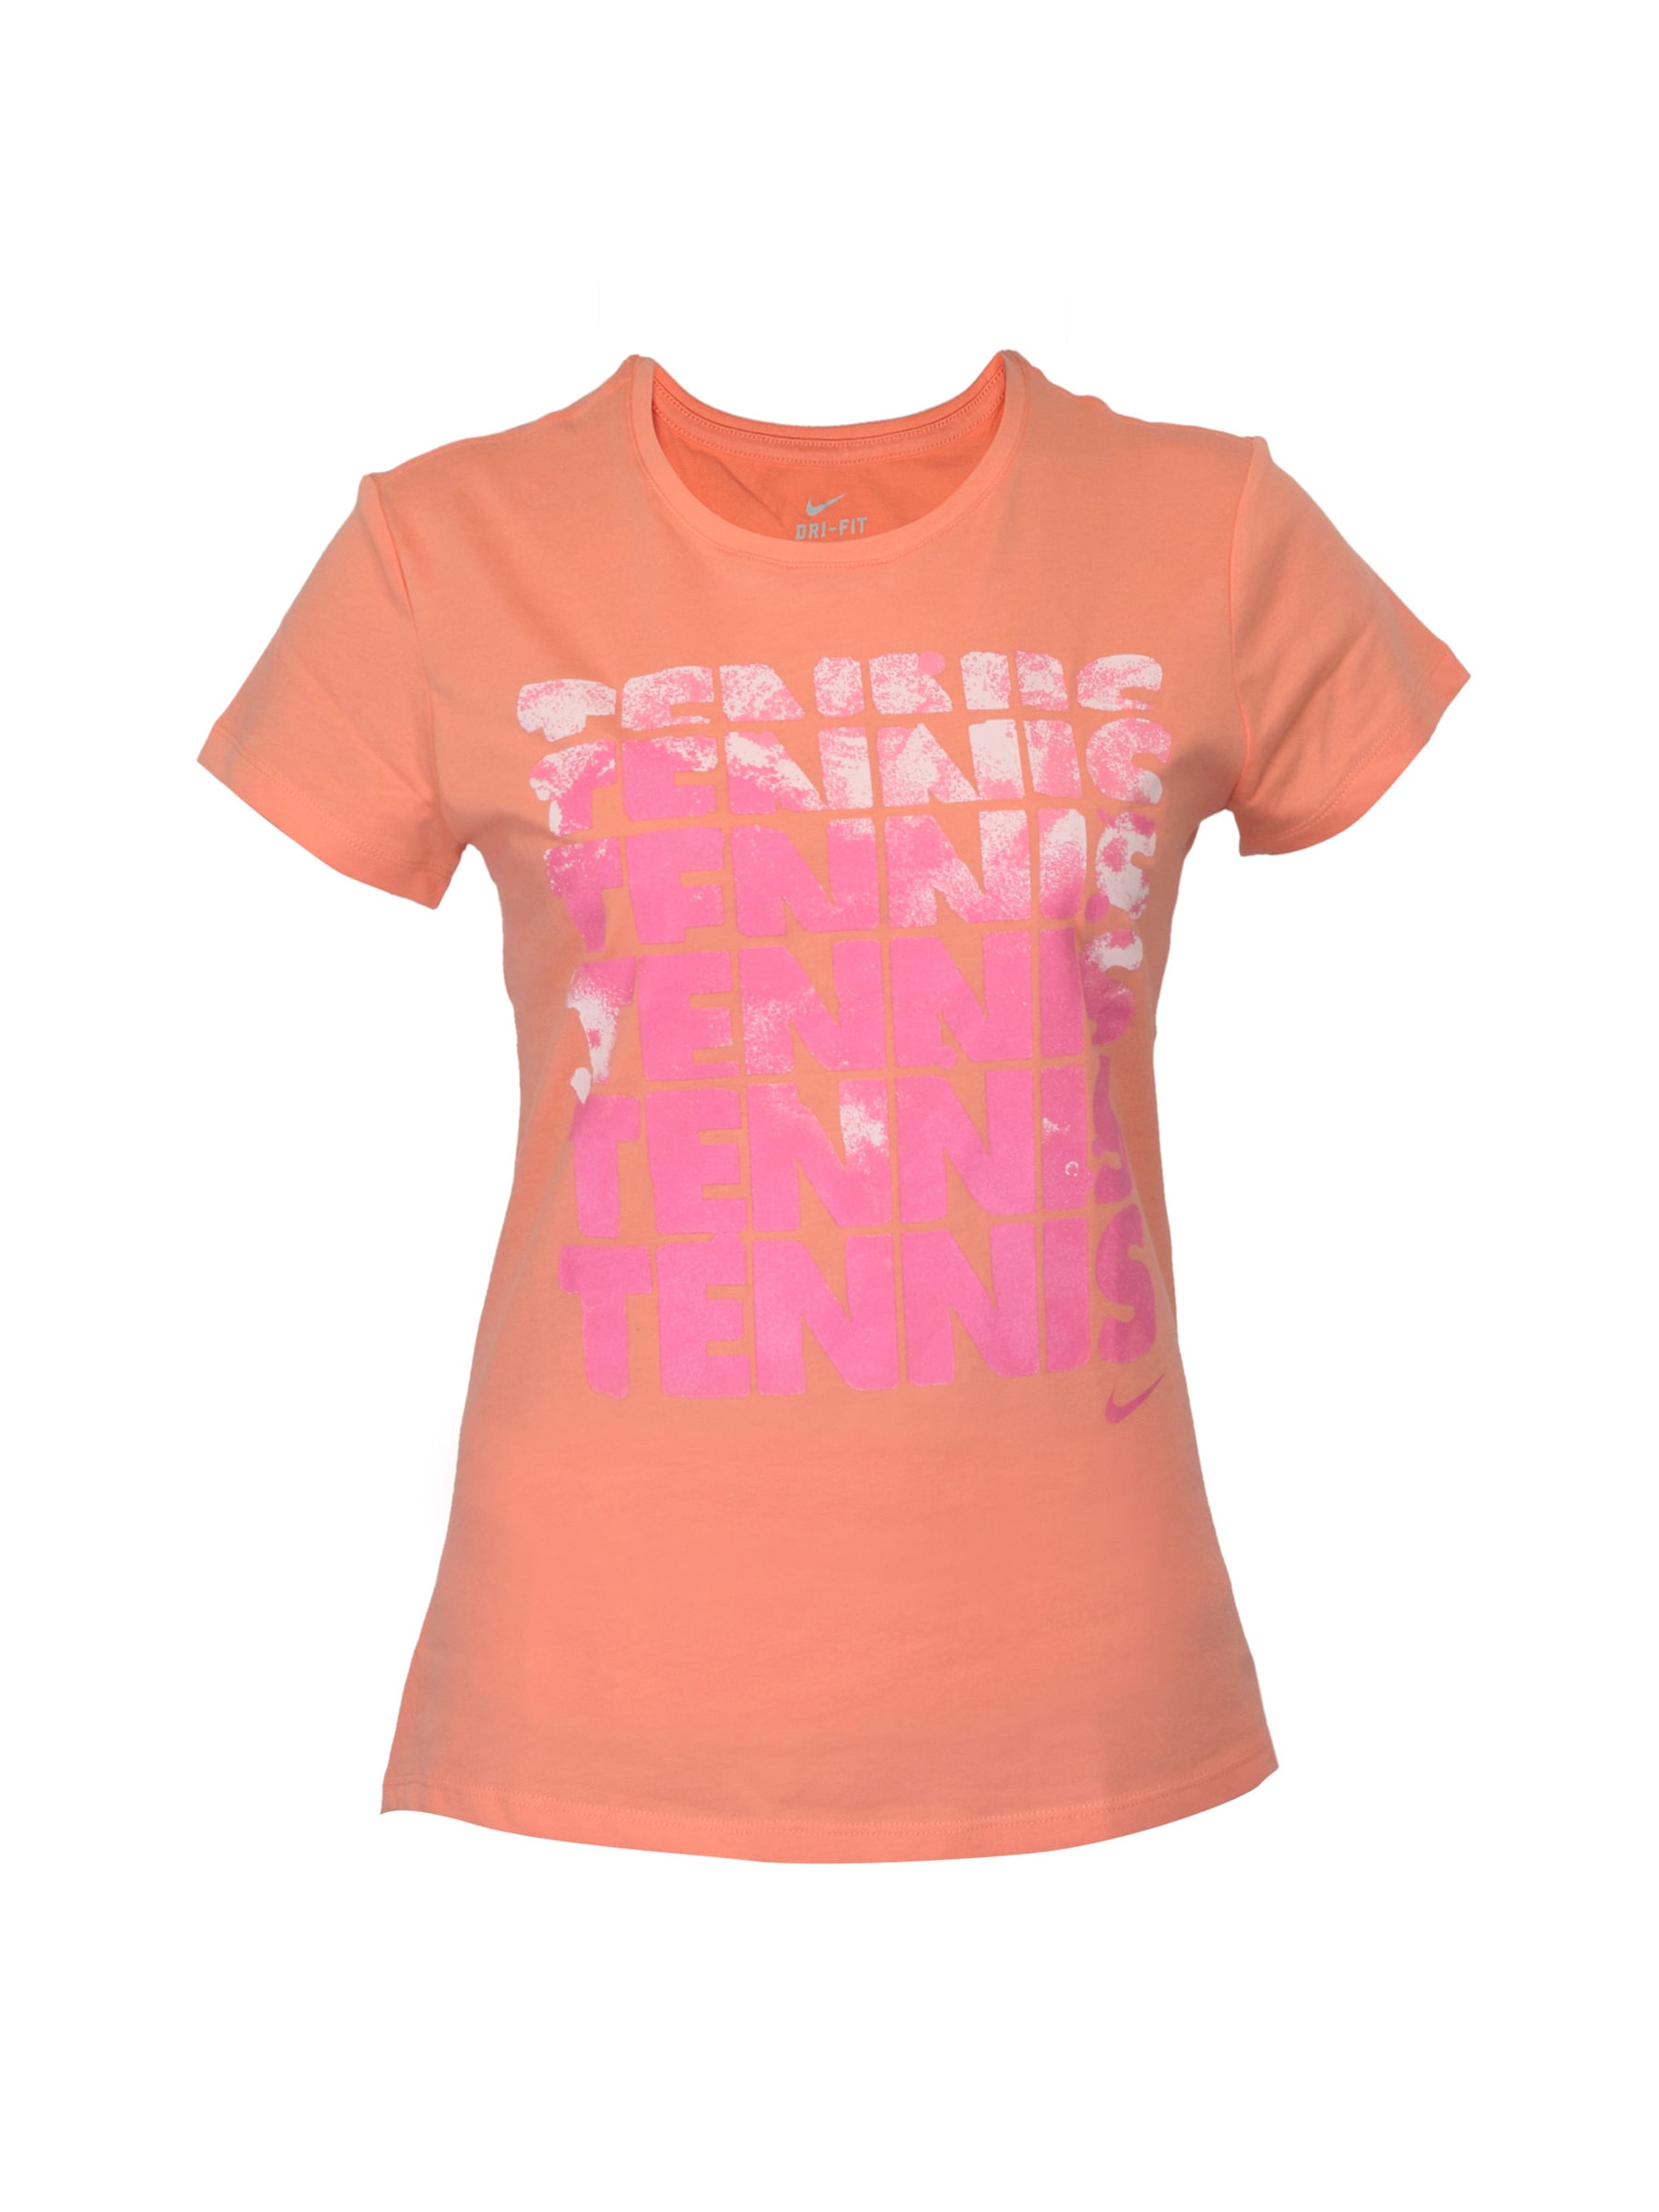 Nike Women Tennis Blockbuster Orange T-shirt